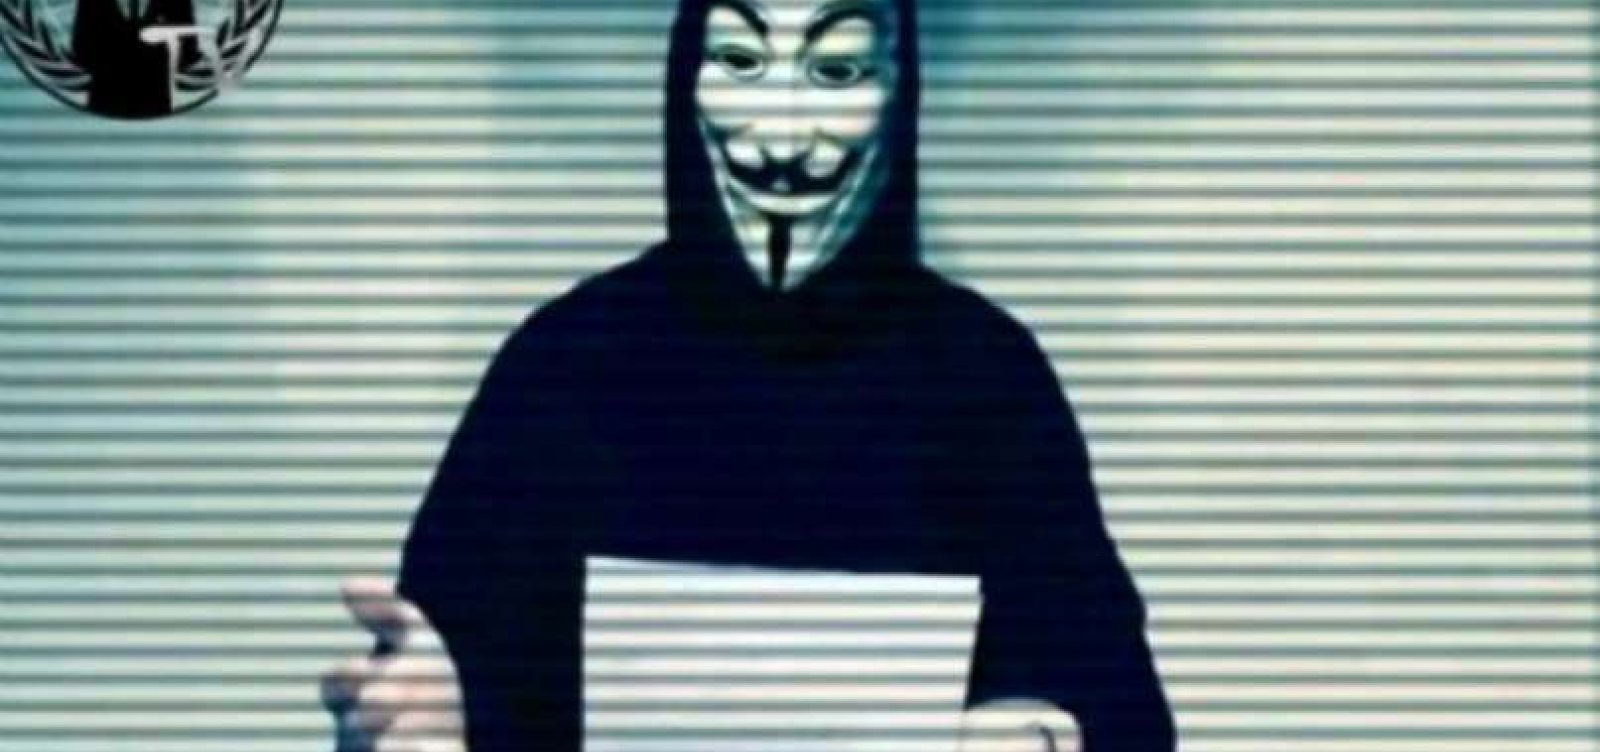 Grupo hacker Anonymous expõe dados de Bolsonaro, filhos e membros do governo